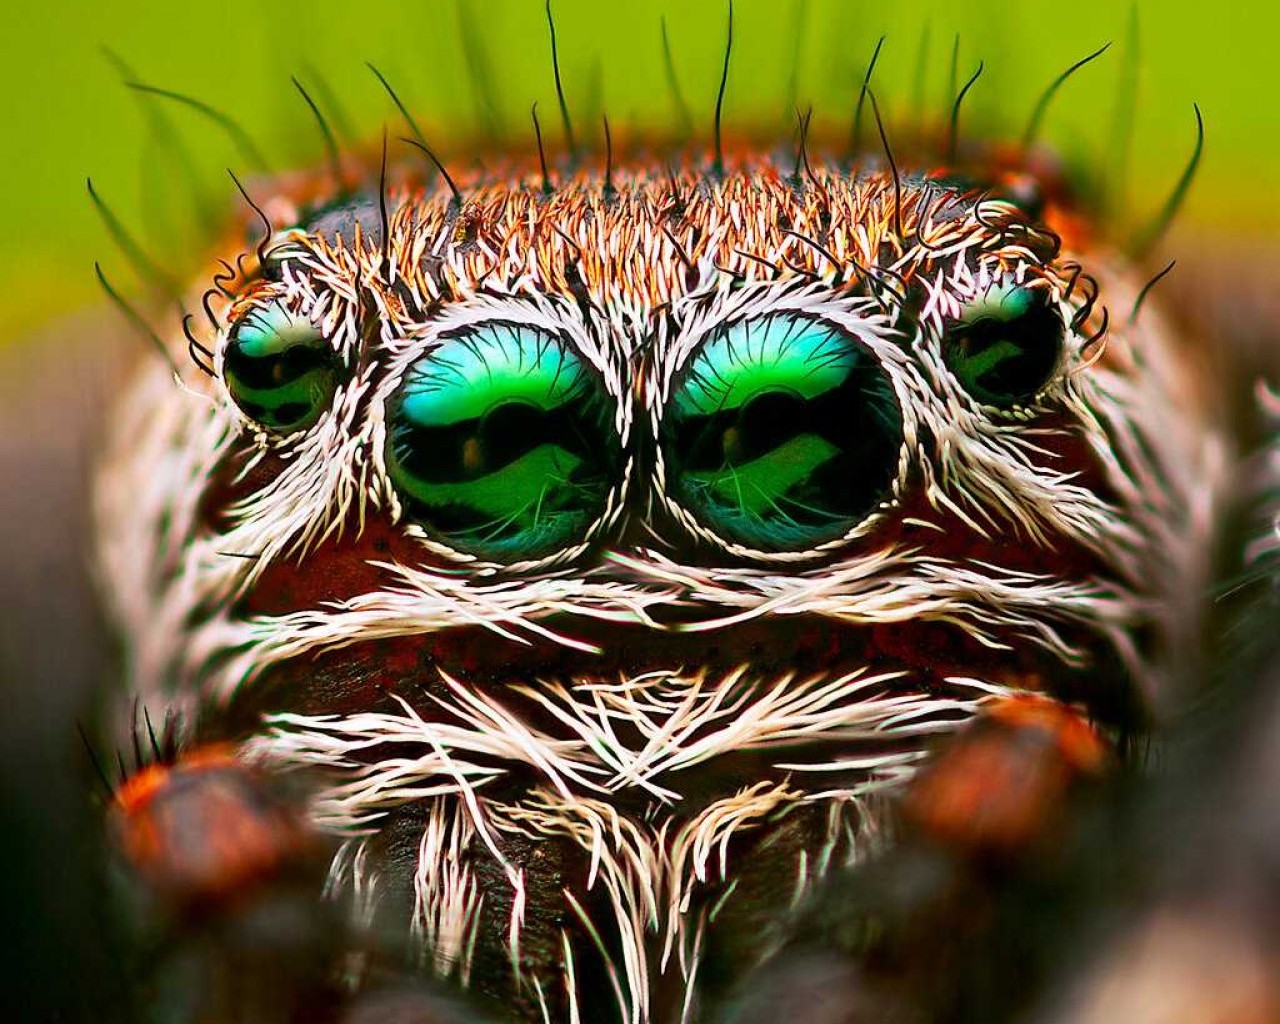 Сколько глаз имеет паук - узнайте все о строении зрительных органов у пауков